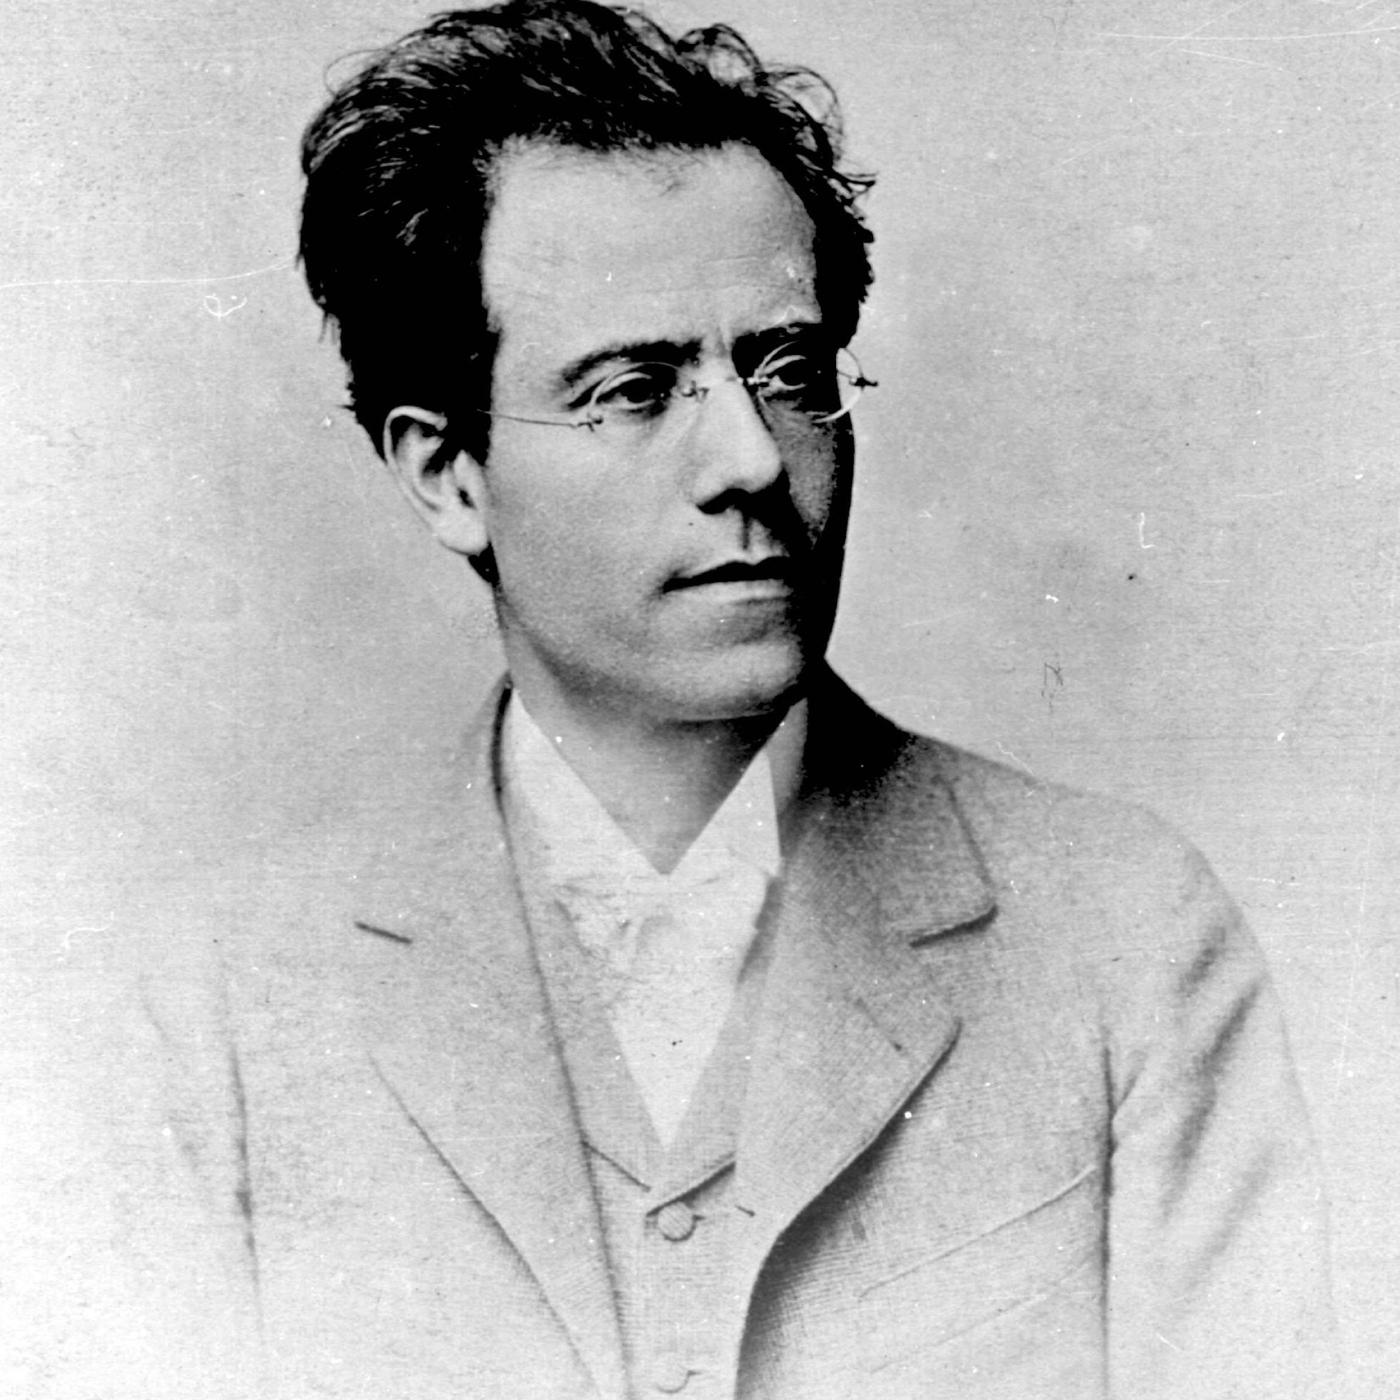 La 6e Symphonie de Mahler, une autobiographie spirituelle